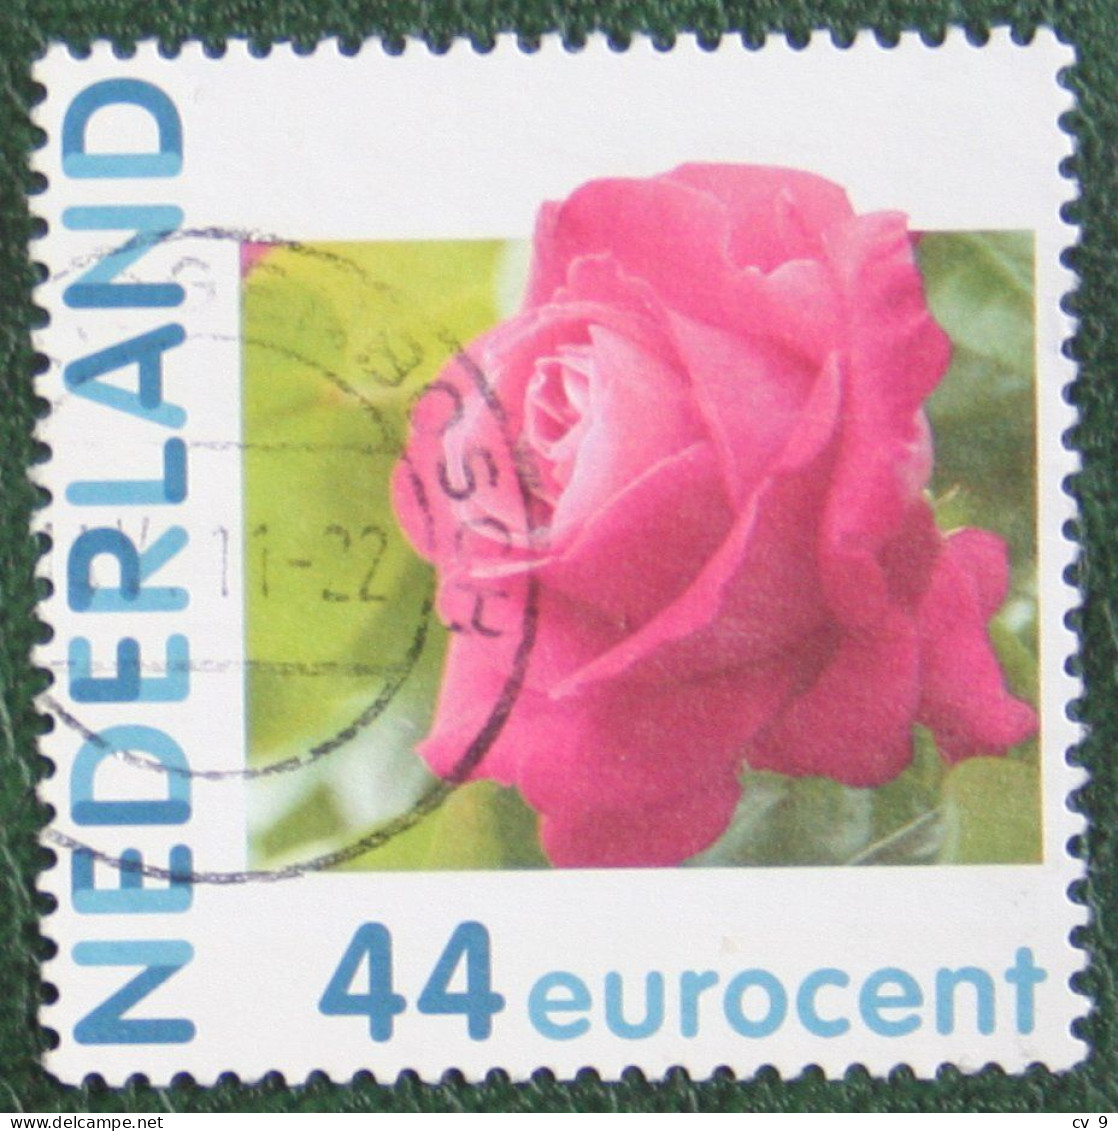 HALLMARK Rose Roos Flower Fleur Blumen Persoonlijke Zegel NVPH 2682 Gestempeld / USED / Oblitere NEDERLAND / NIEDERLANDE - Persoonlijke Postzegels